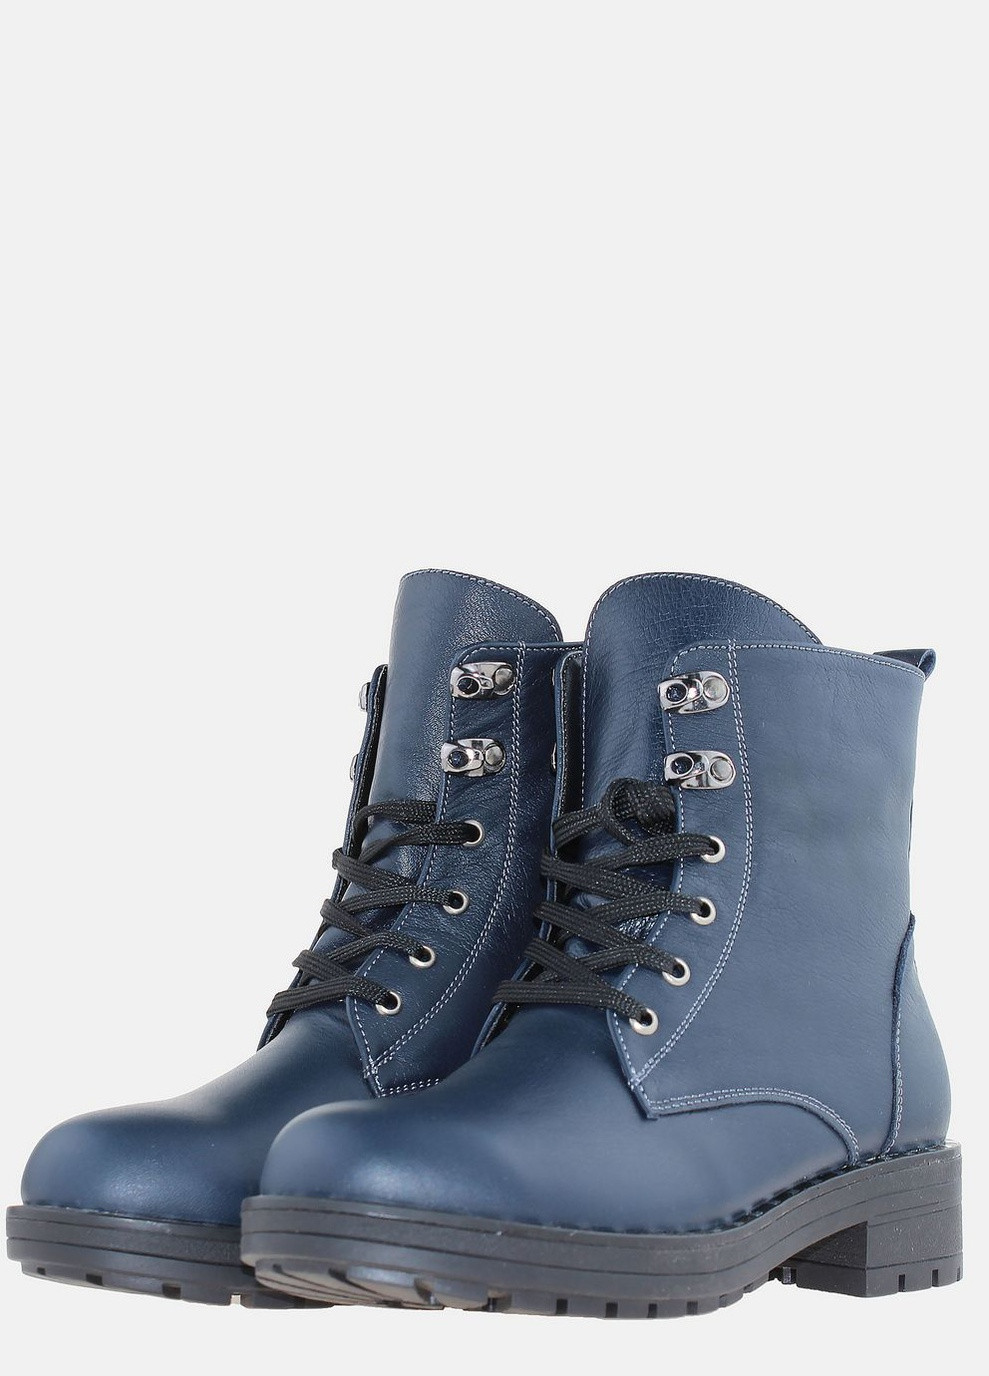 Зимние ботинки r7-9108 синий Viann